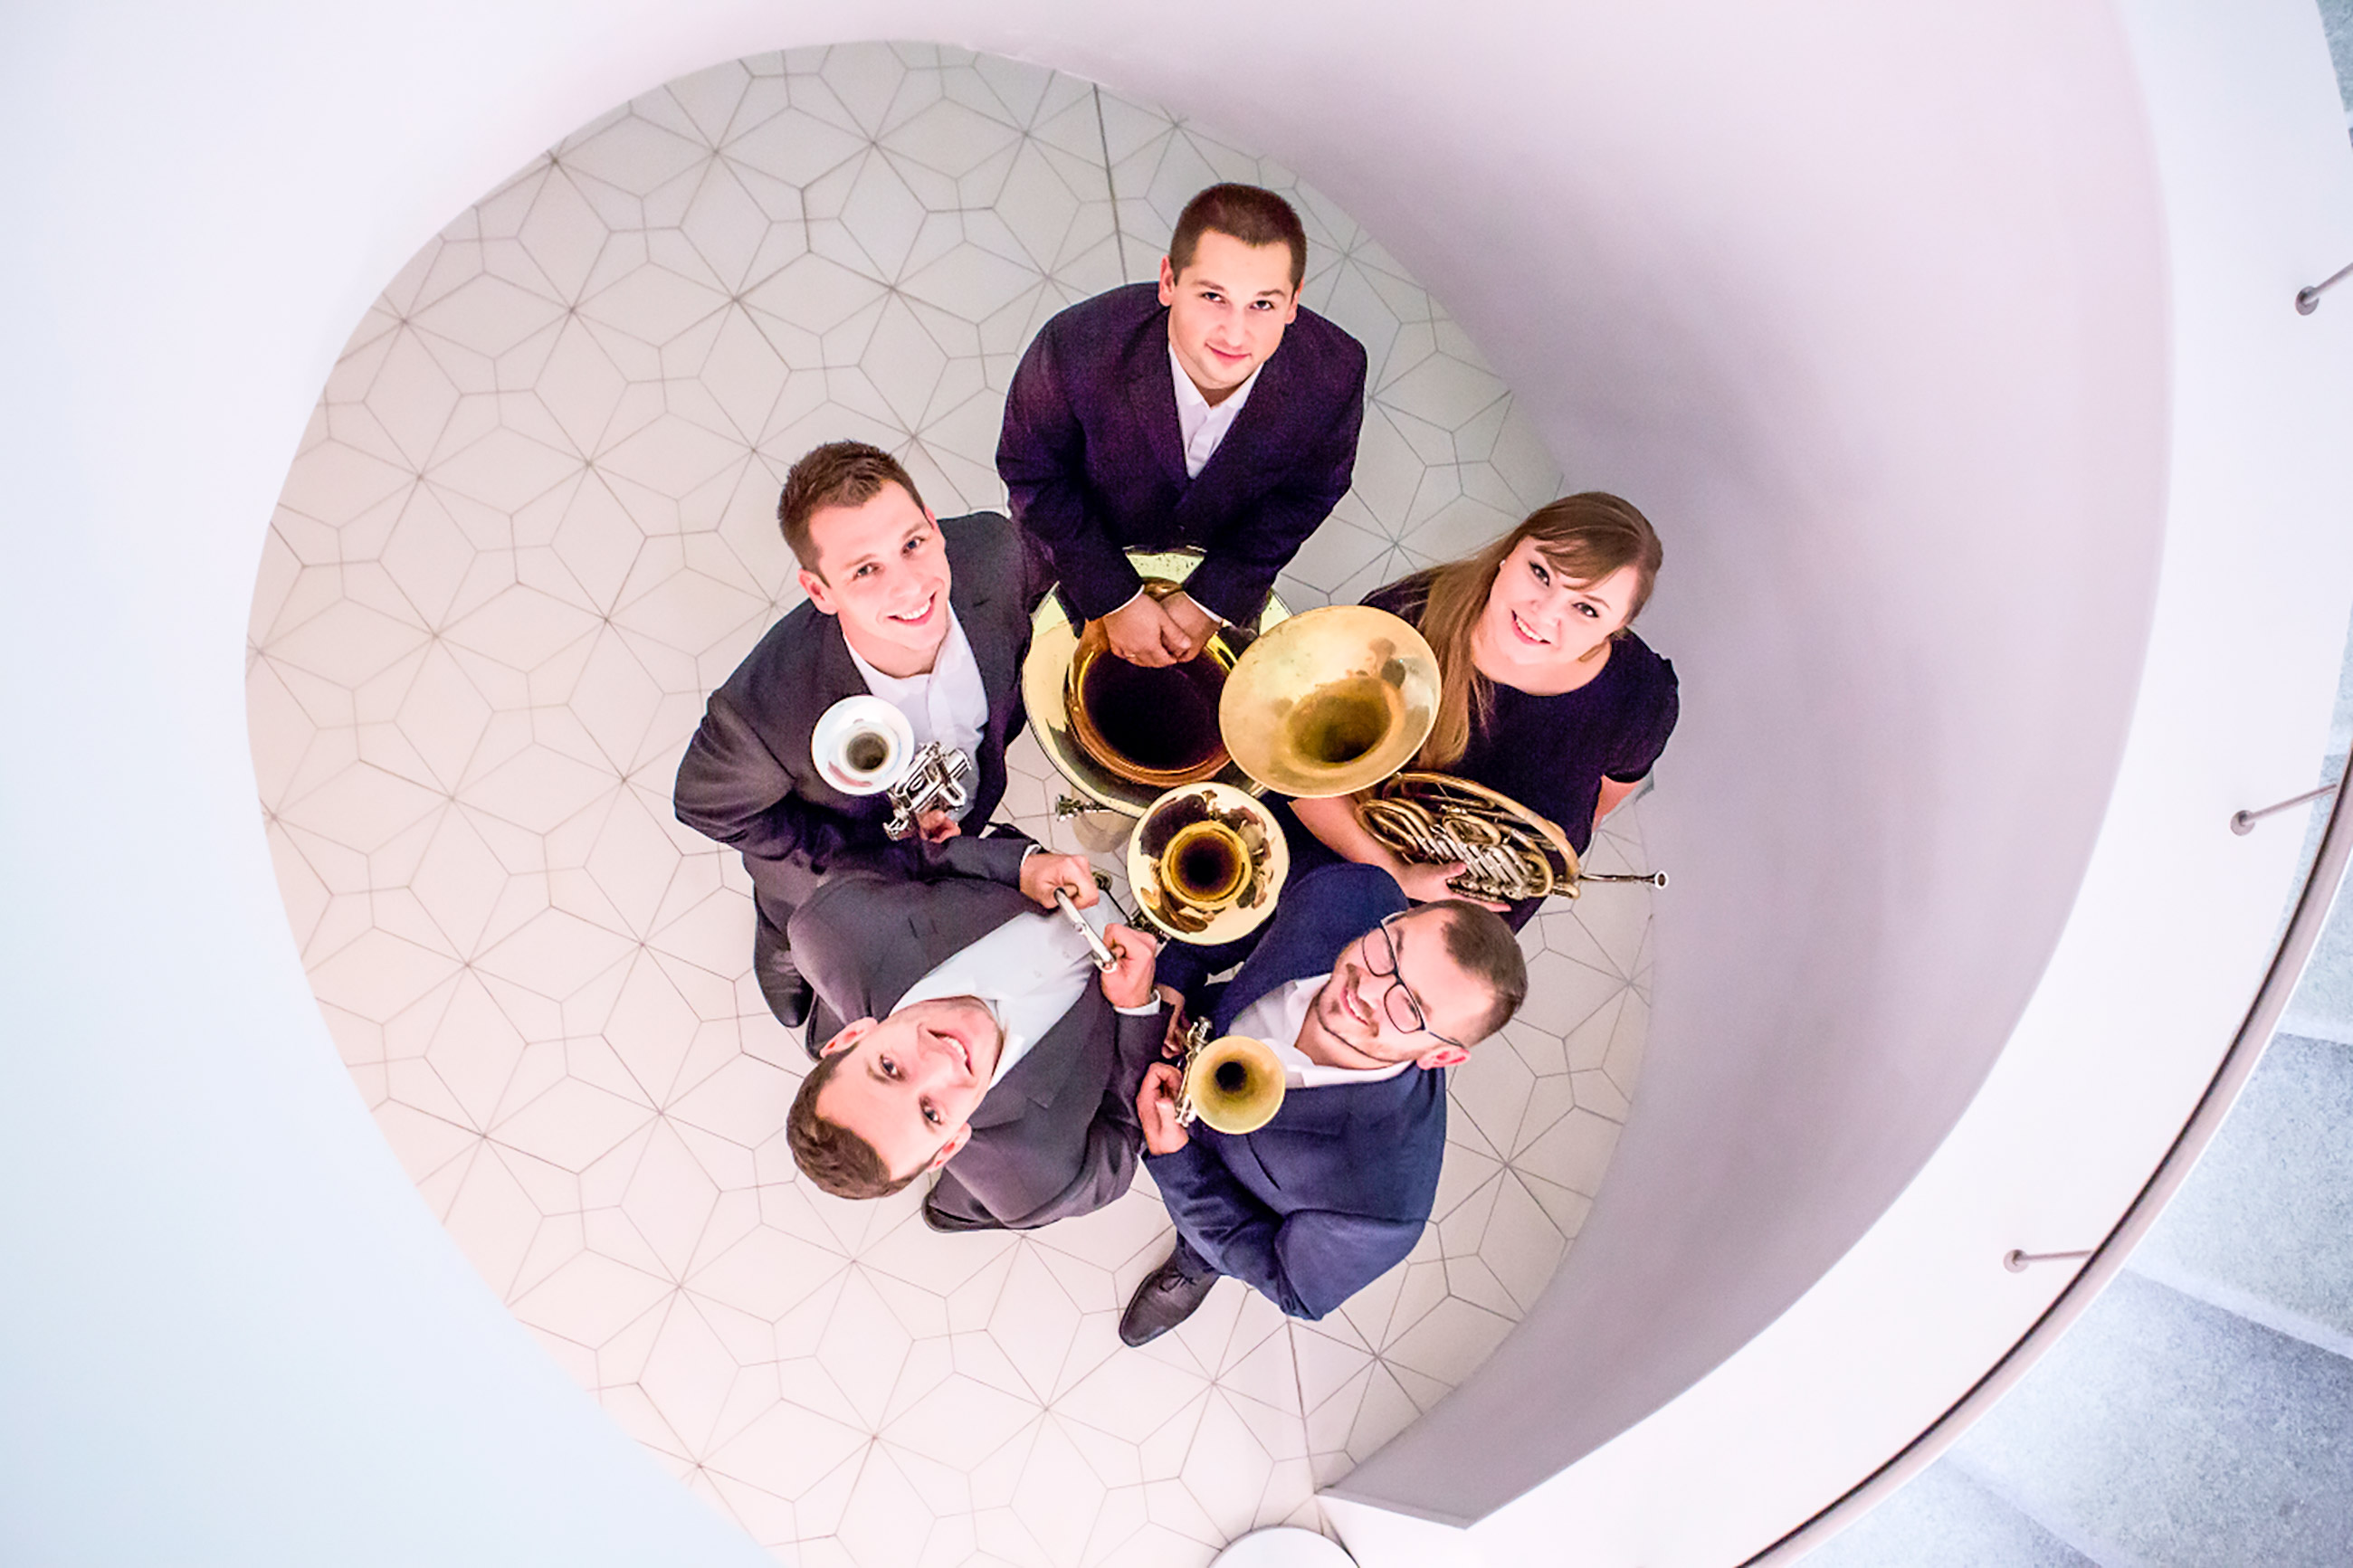 Szczecin Brass Quintet